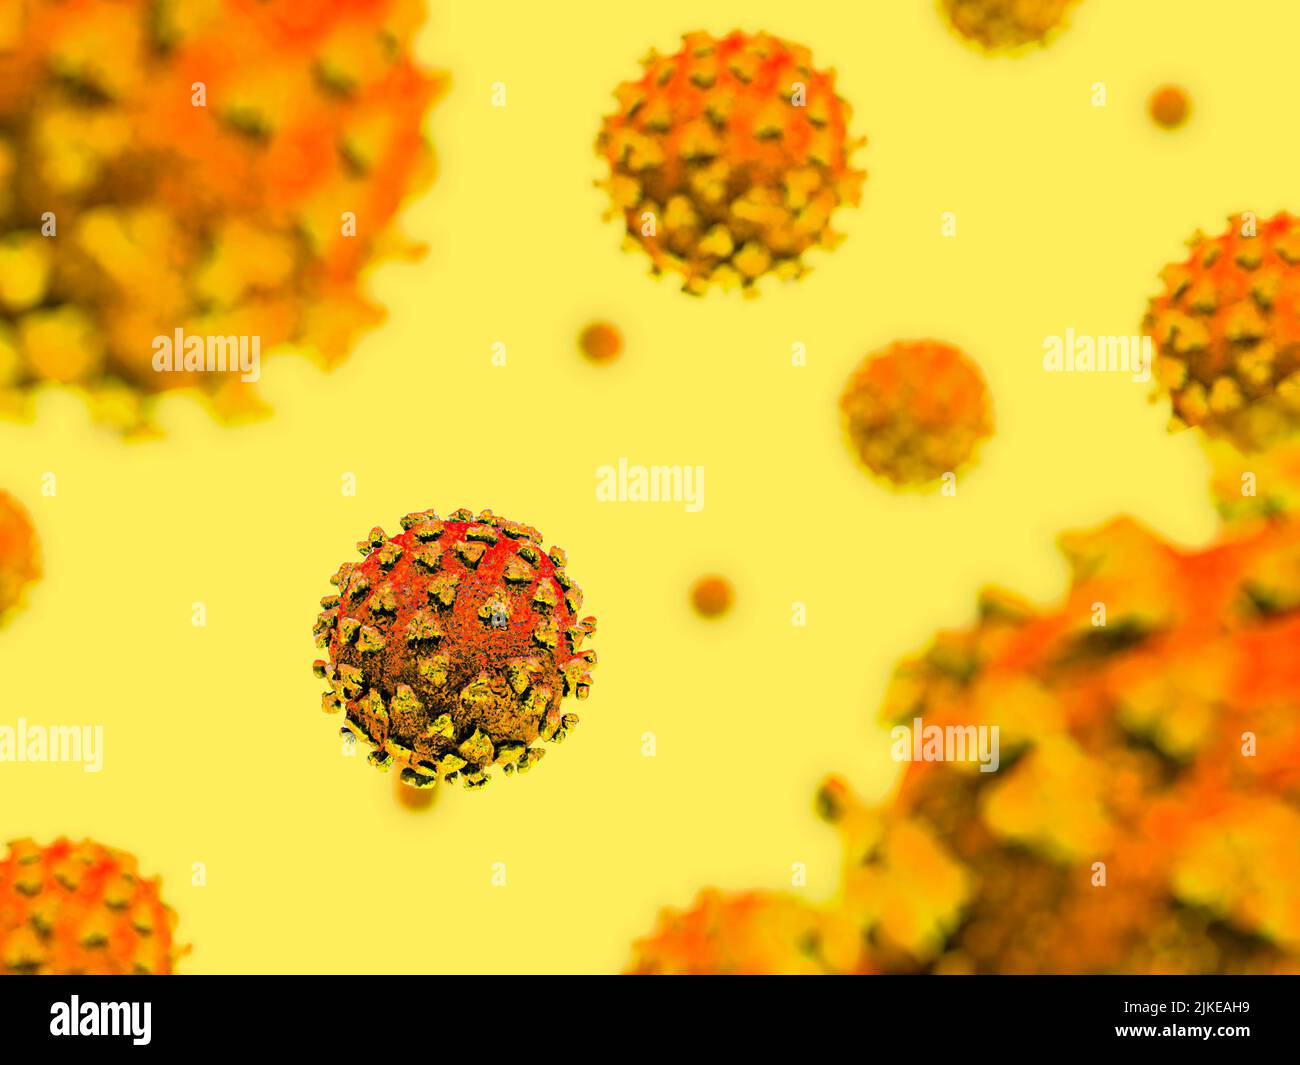 An illustration of the monkeypox virus Stock Photo